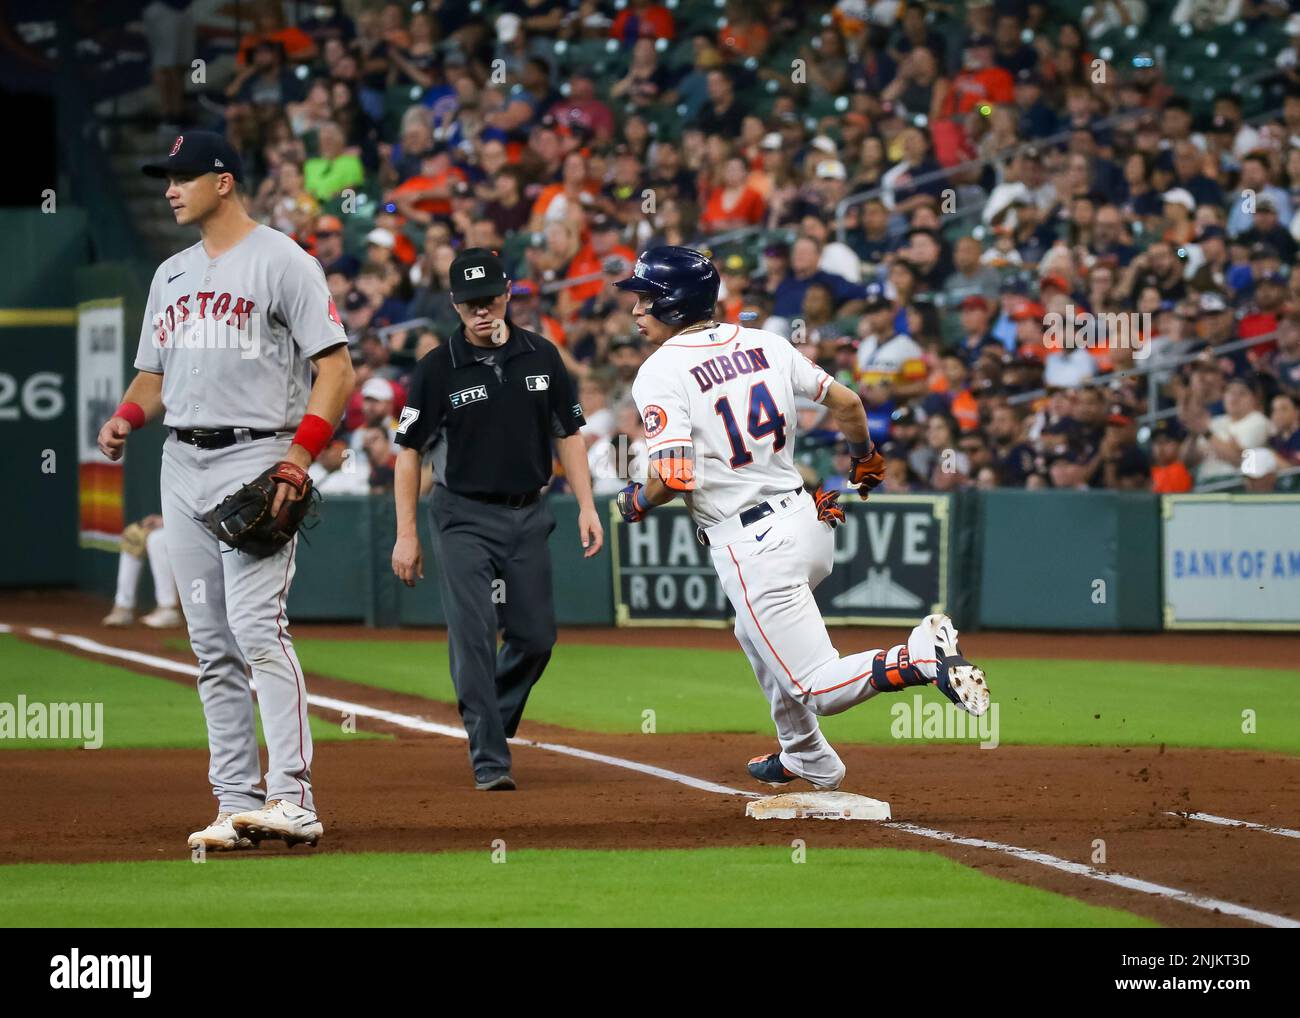 HOUSTON, TX - AUGUST 11: Houston Astros center fielder Mauricio